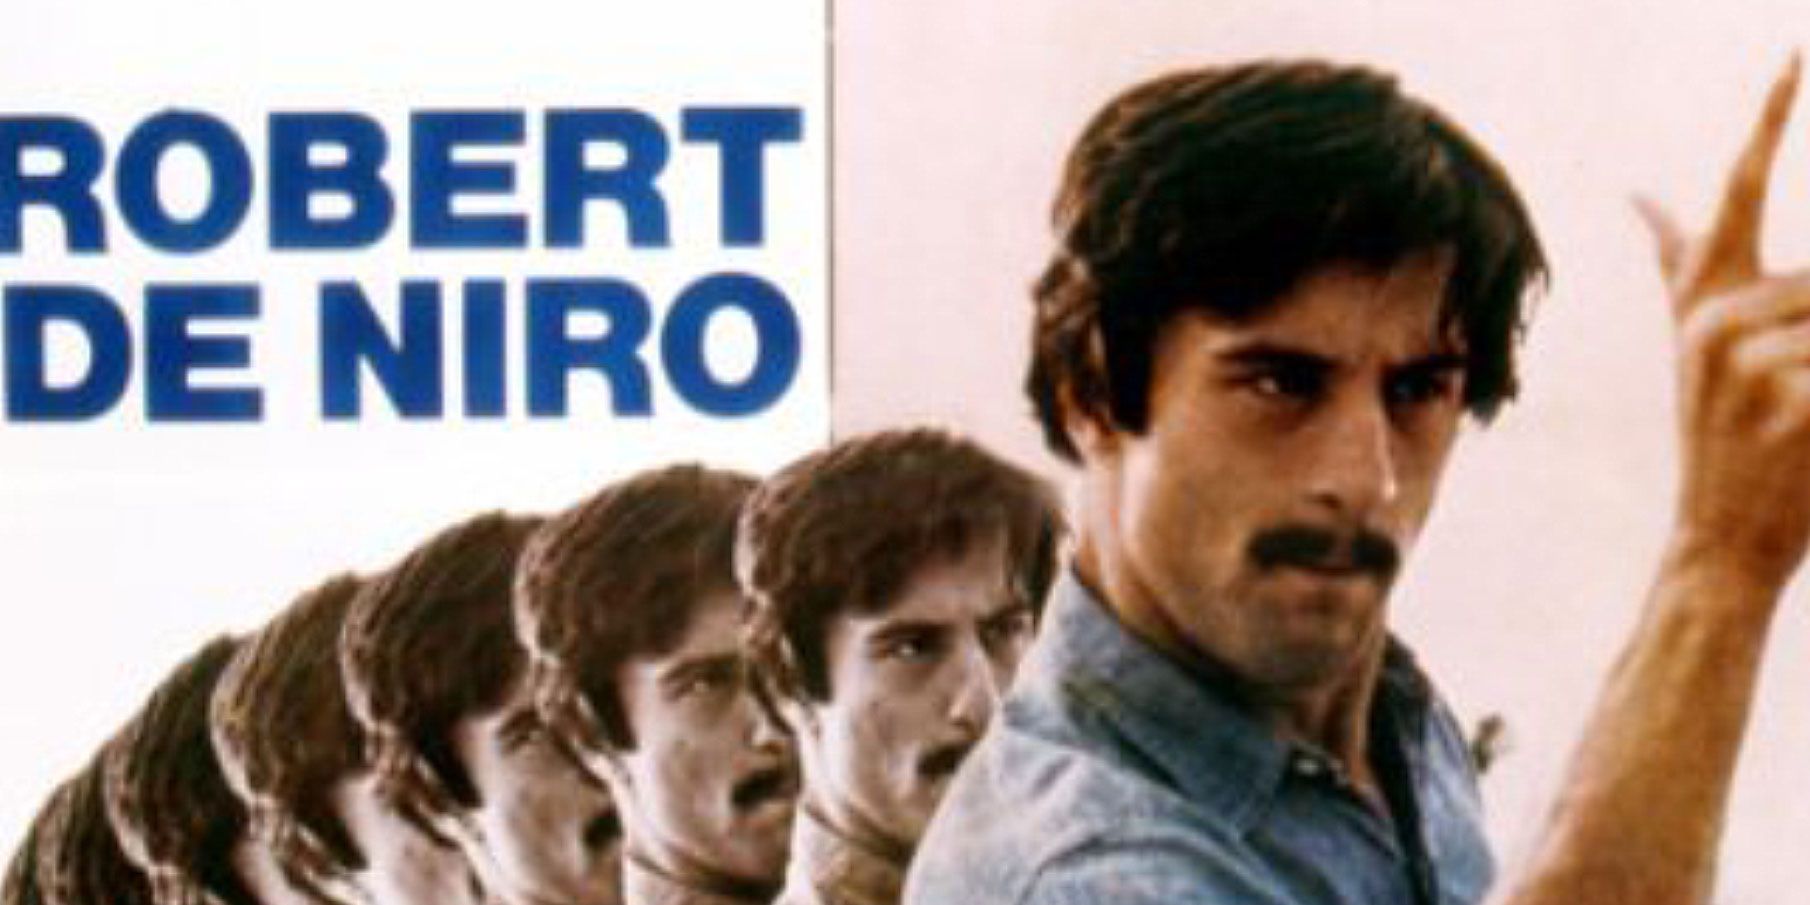 Robert De Niro His 5 Best (And 5 Worst) Films According To IMDB